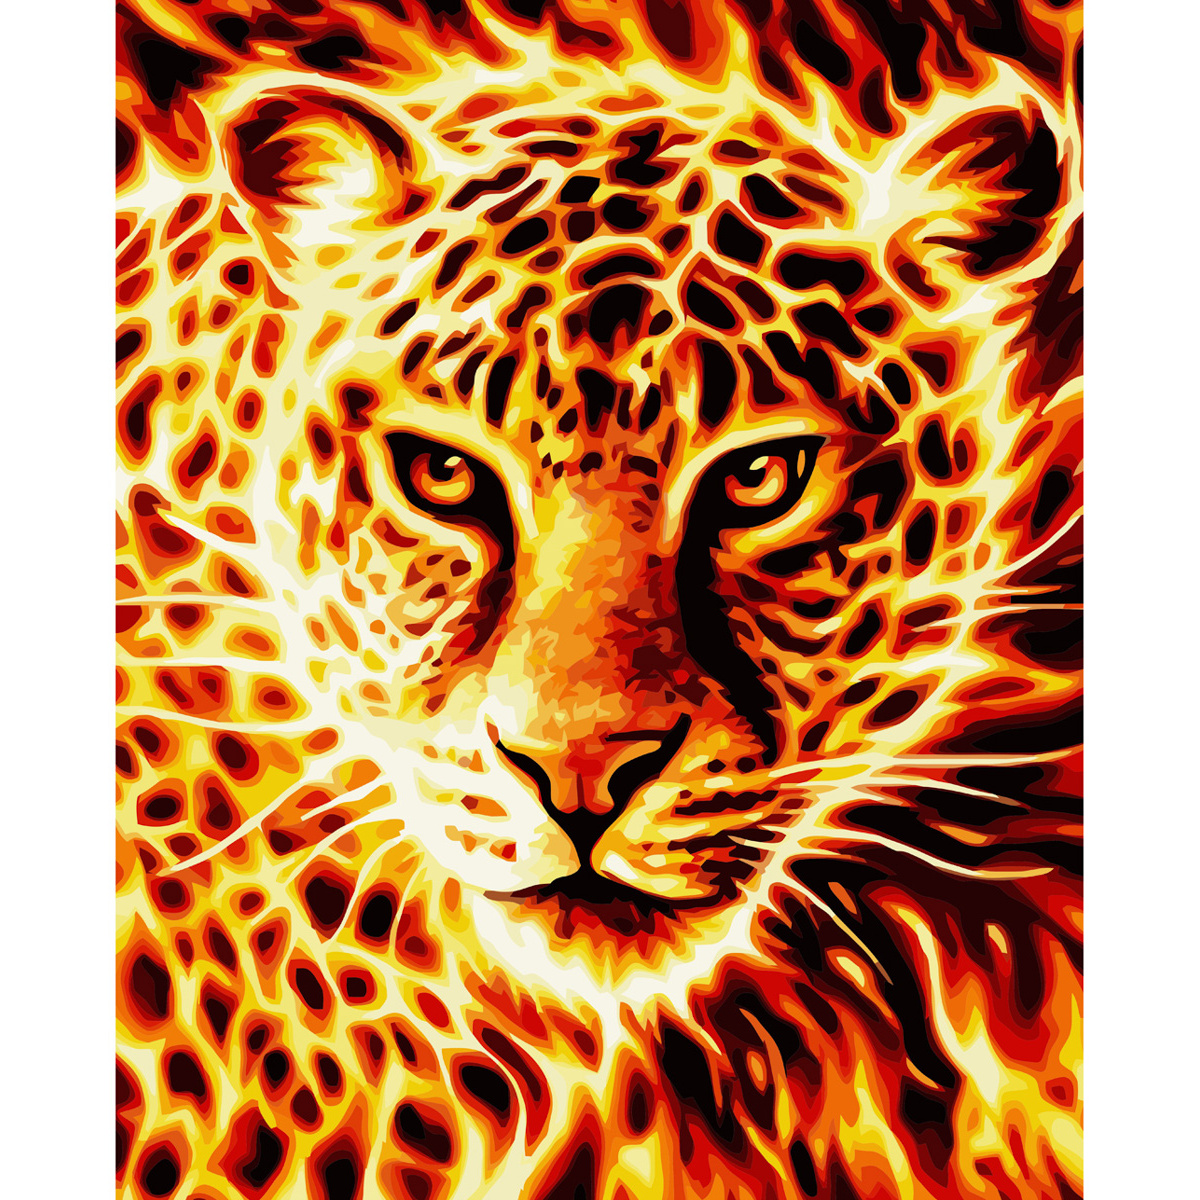 Картина по номерам Strateg ПРЕМИУМ Огненный леопард с лаком размером 40х50 см VA-3645